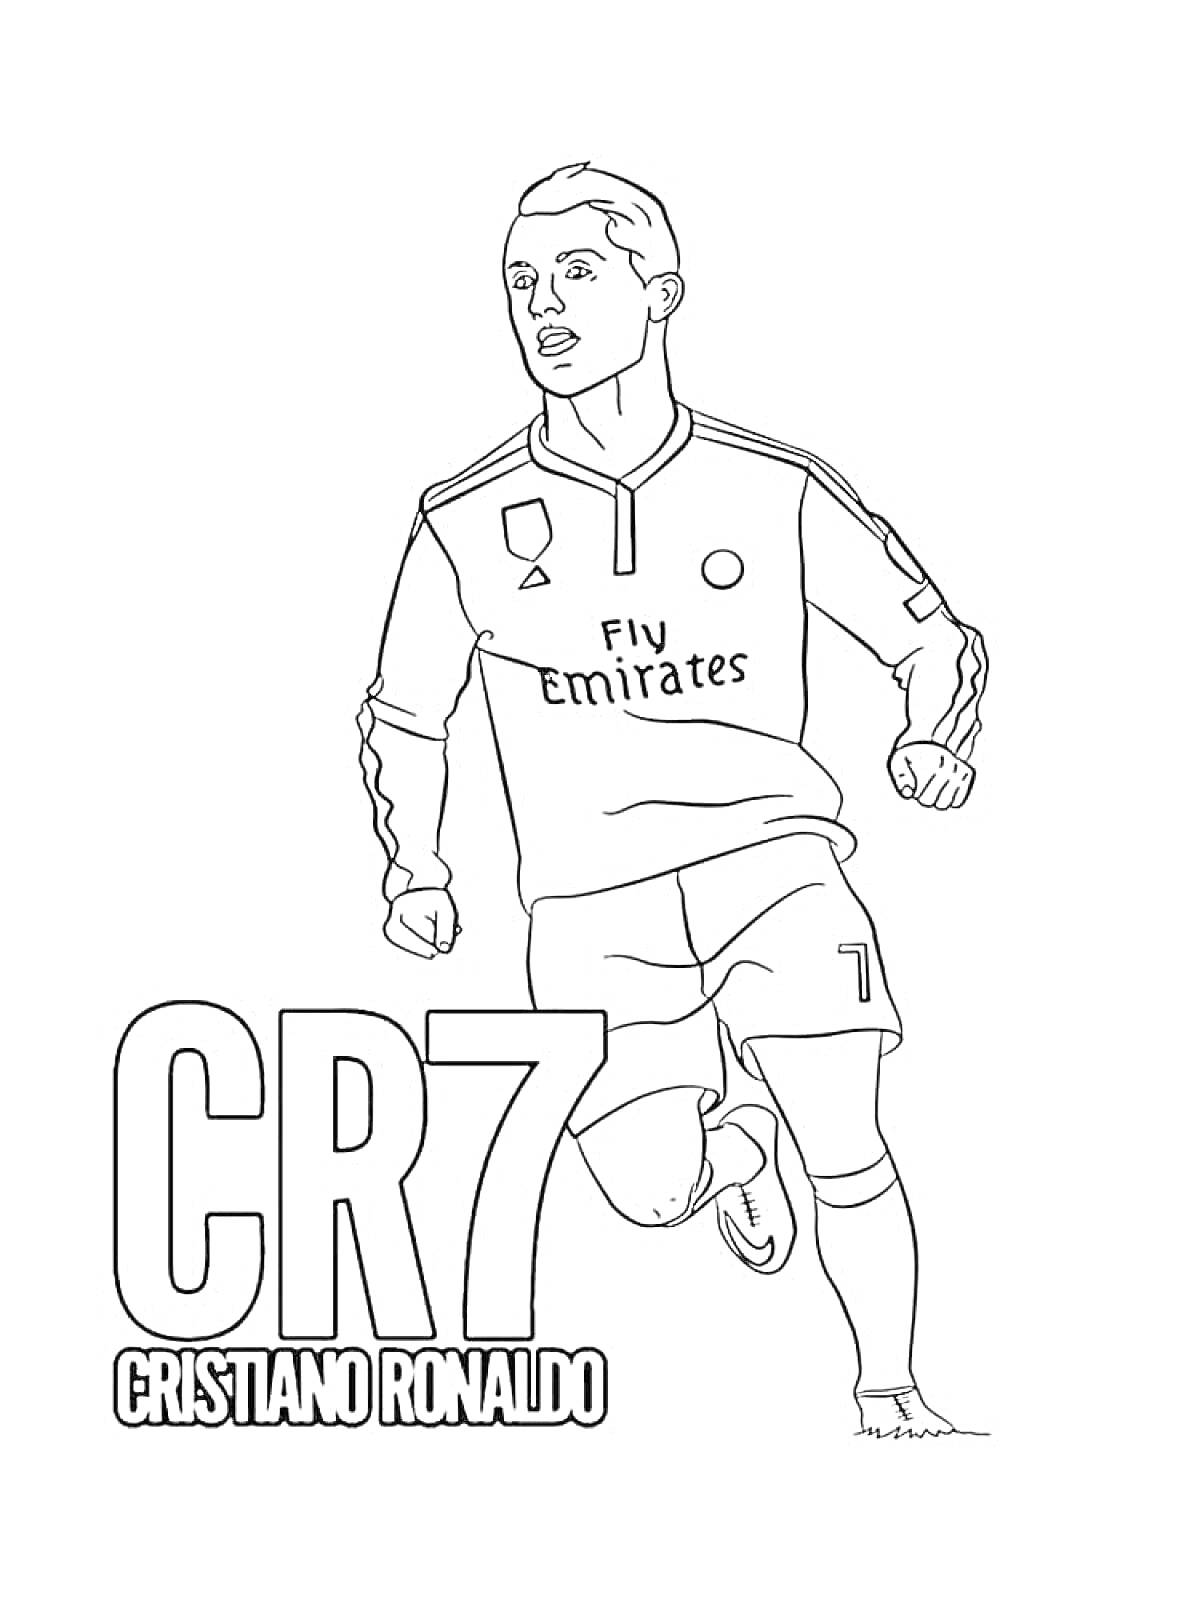 Футболист в форме с логотипом Emirates, текст CR7 и Cristiano Ronaldo